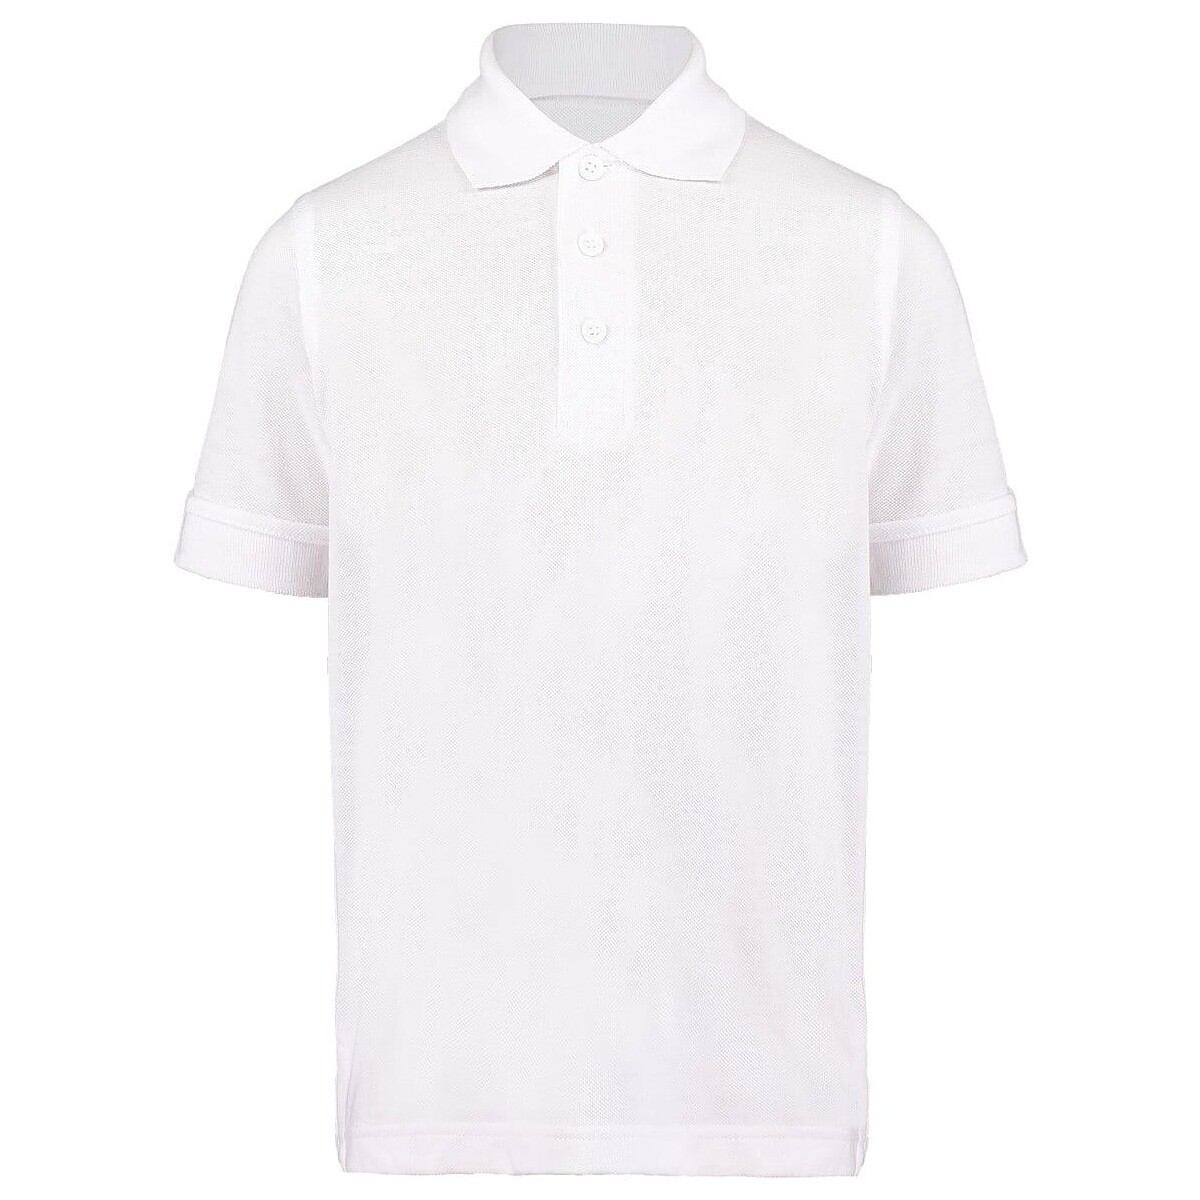 textil Niños Tops y Camisetas Kustom Kit KK406 Blanco